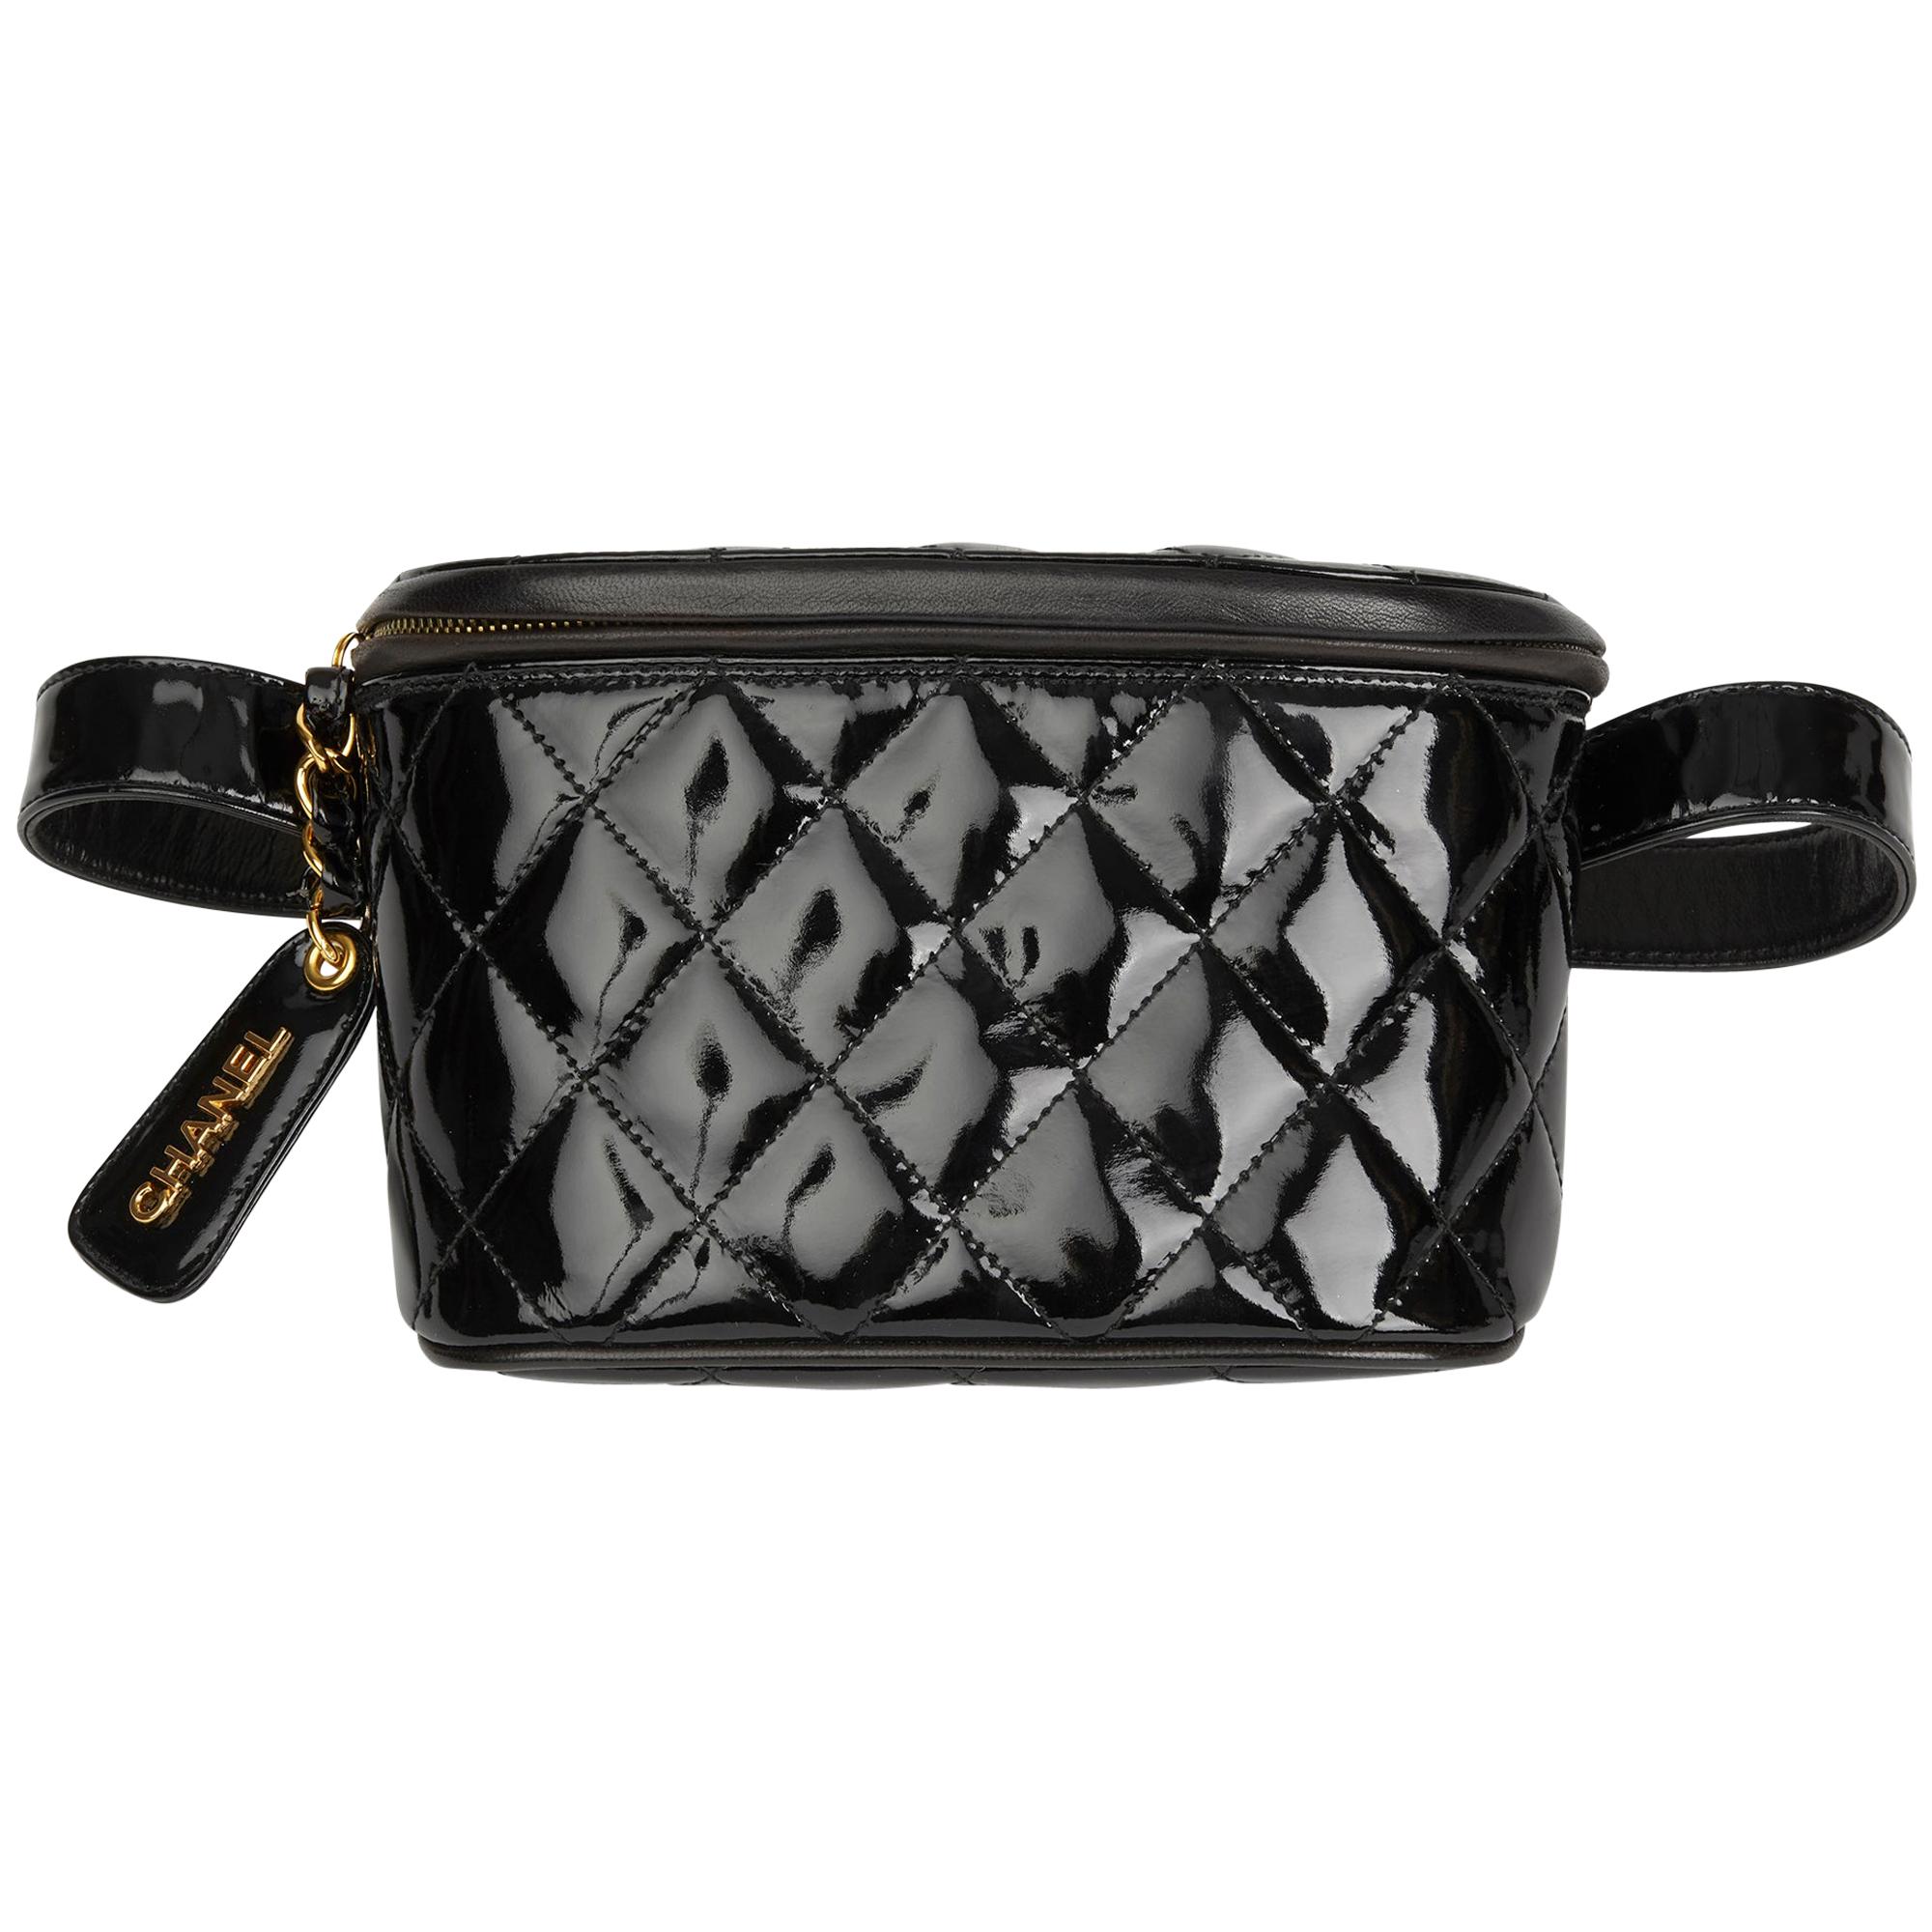 1995 Chanel Black Quilted Patent Leather Vintage Timeless Belt Bag